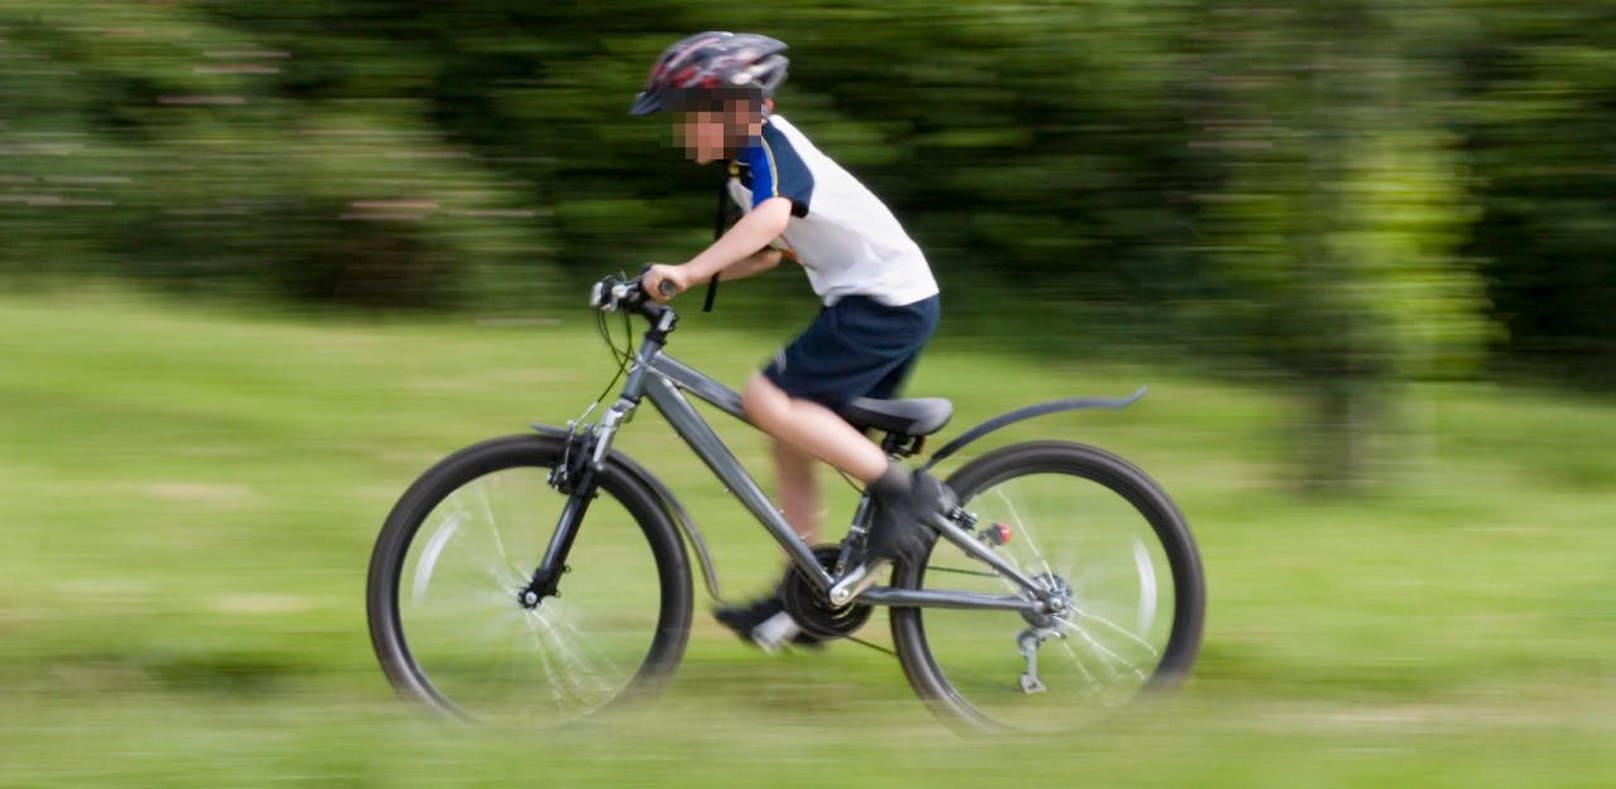 12-Jähriger krachte mit Rad in Bus: Lebensgefahr